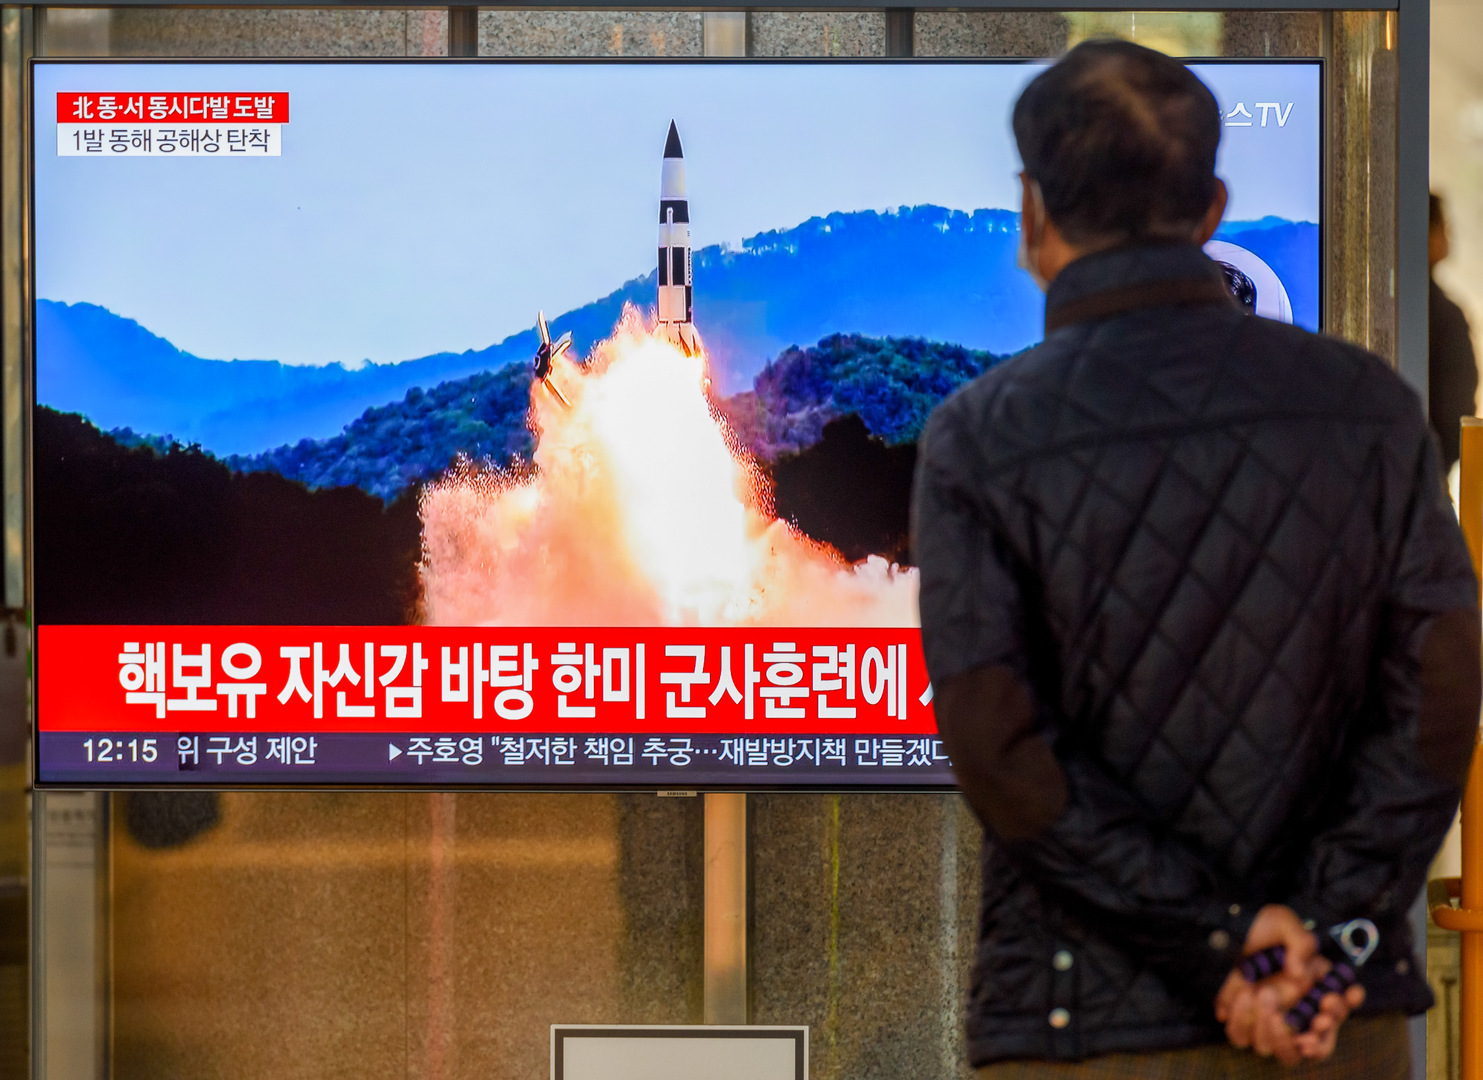 يونهاب: كوريا الشمالية تطلق صاروخا باتجاه بحر اليابان